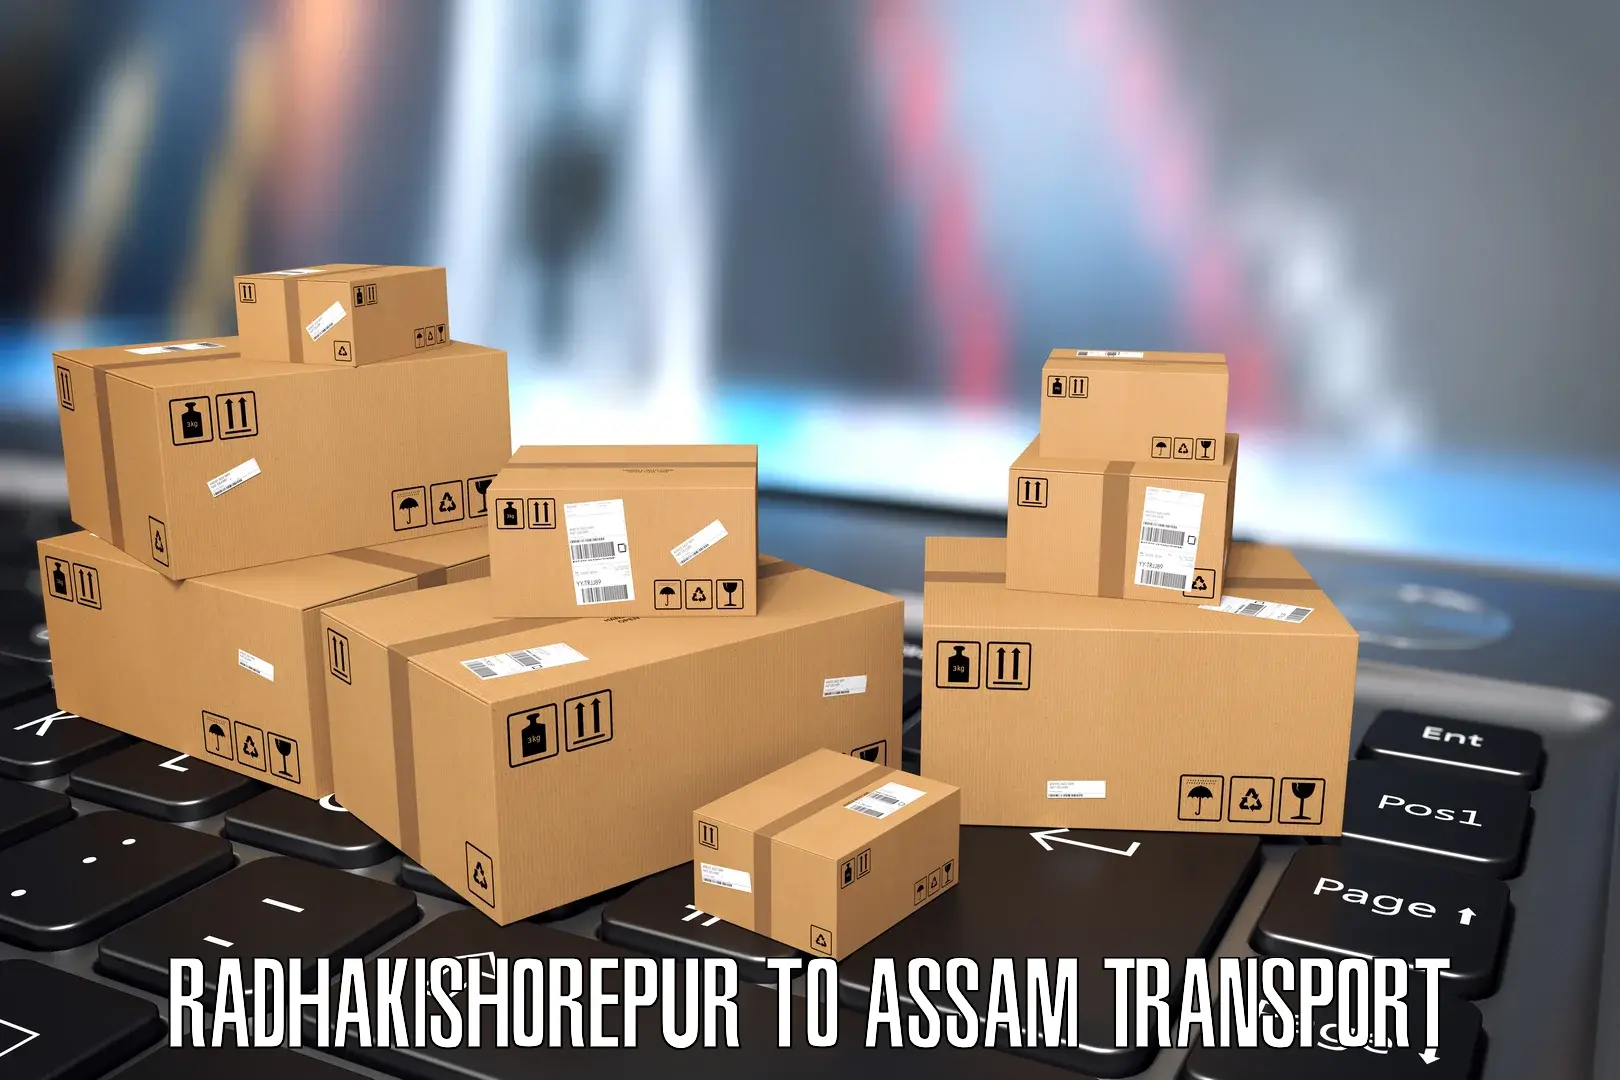 Furniture transport service Radhakishorepur to NIT Silchar